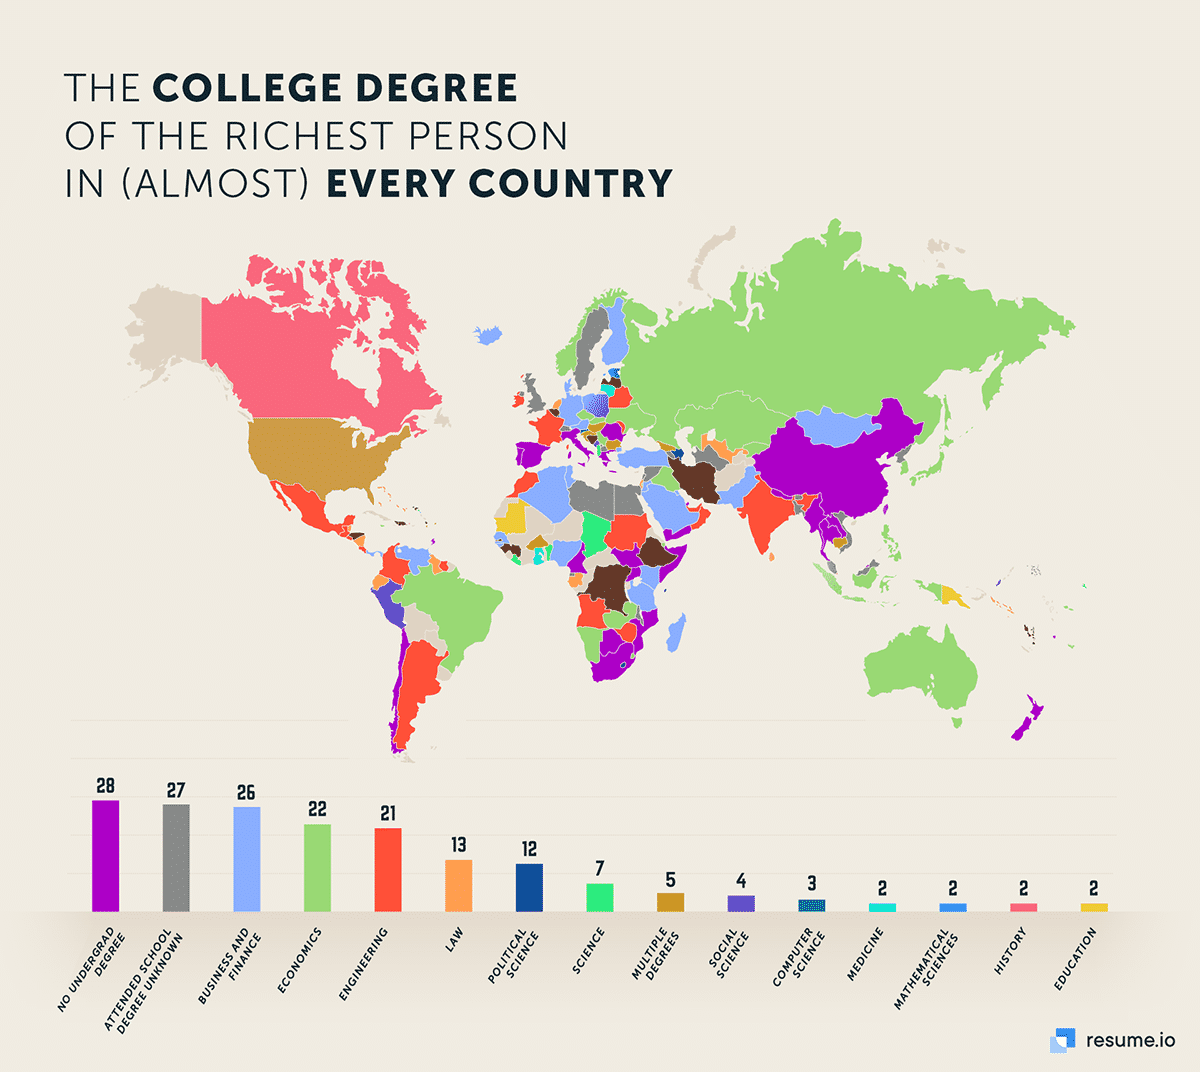 vysokoškolský titul potřebujete k tomu, abyste se zařadili mezi nejbohatší lidi světa.